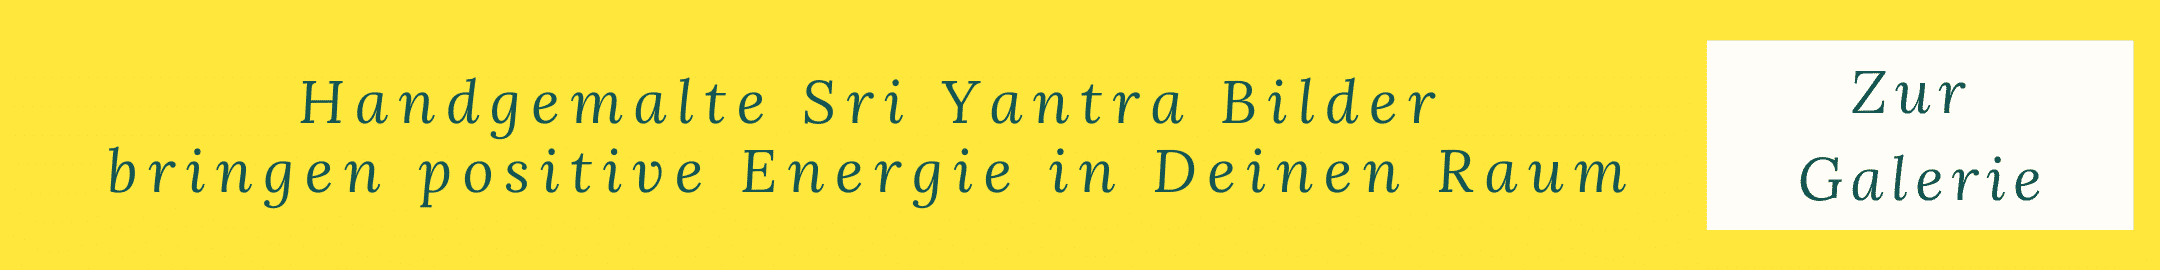 Sri Yantra Bilder online kaufen